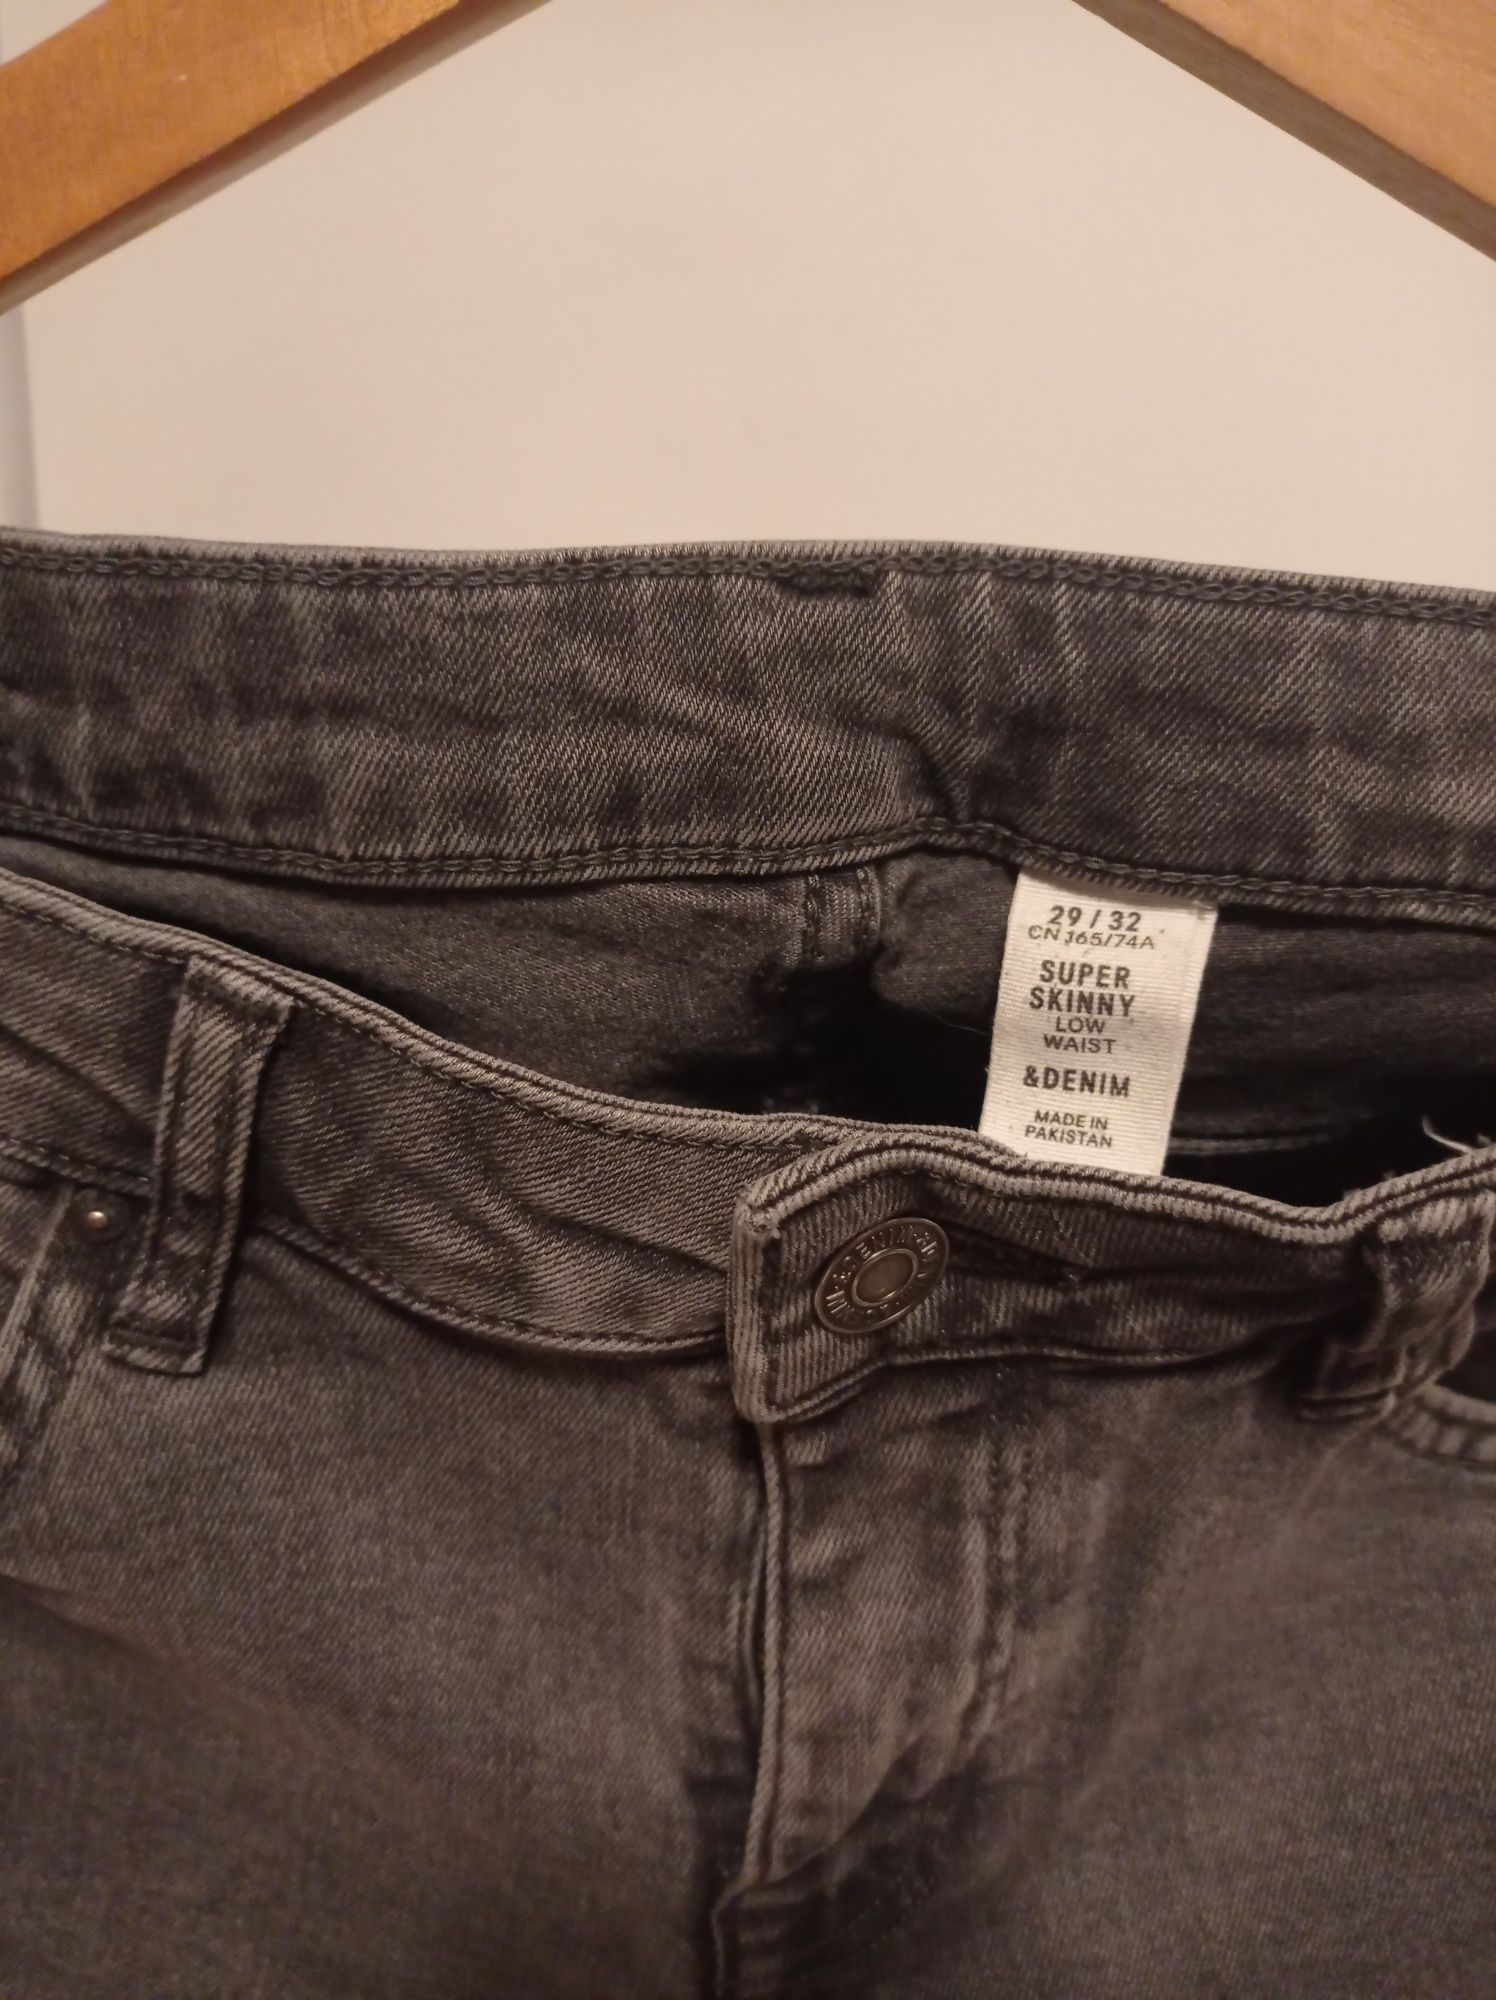 Spodnie Jeans HM super skinny